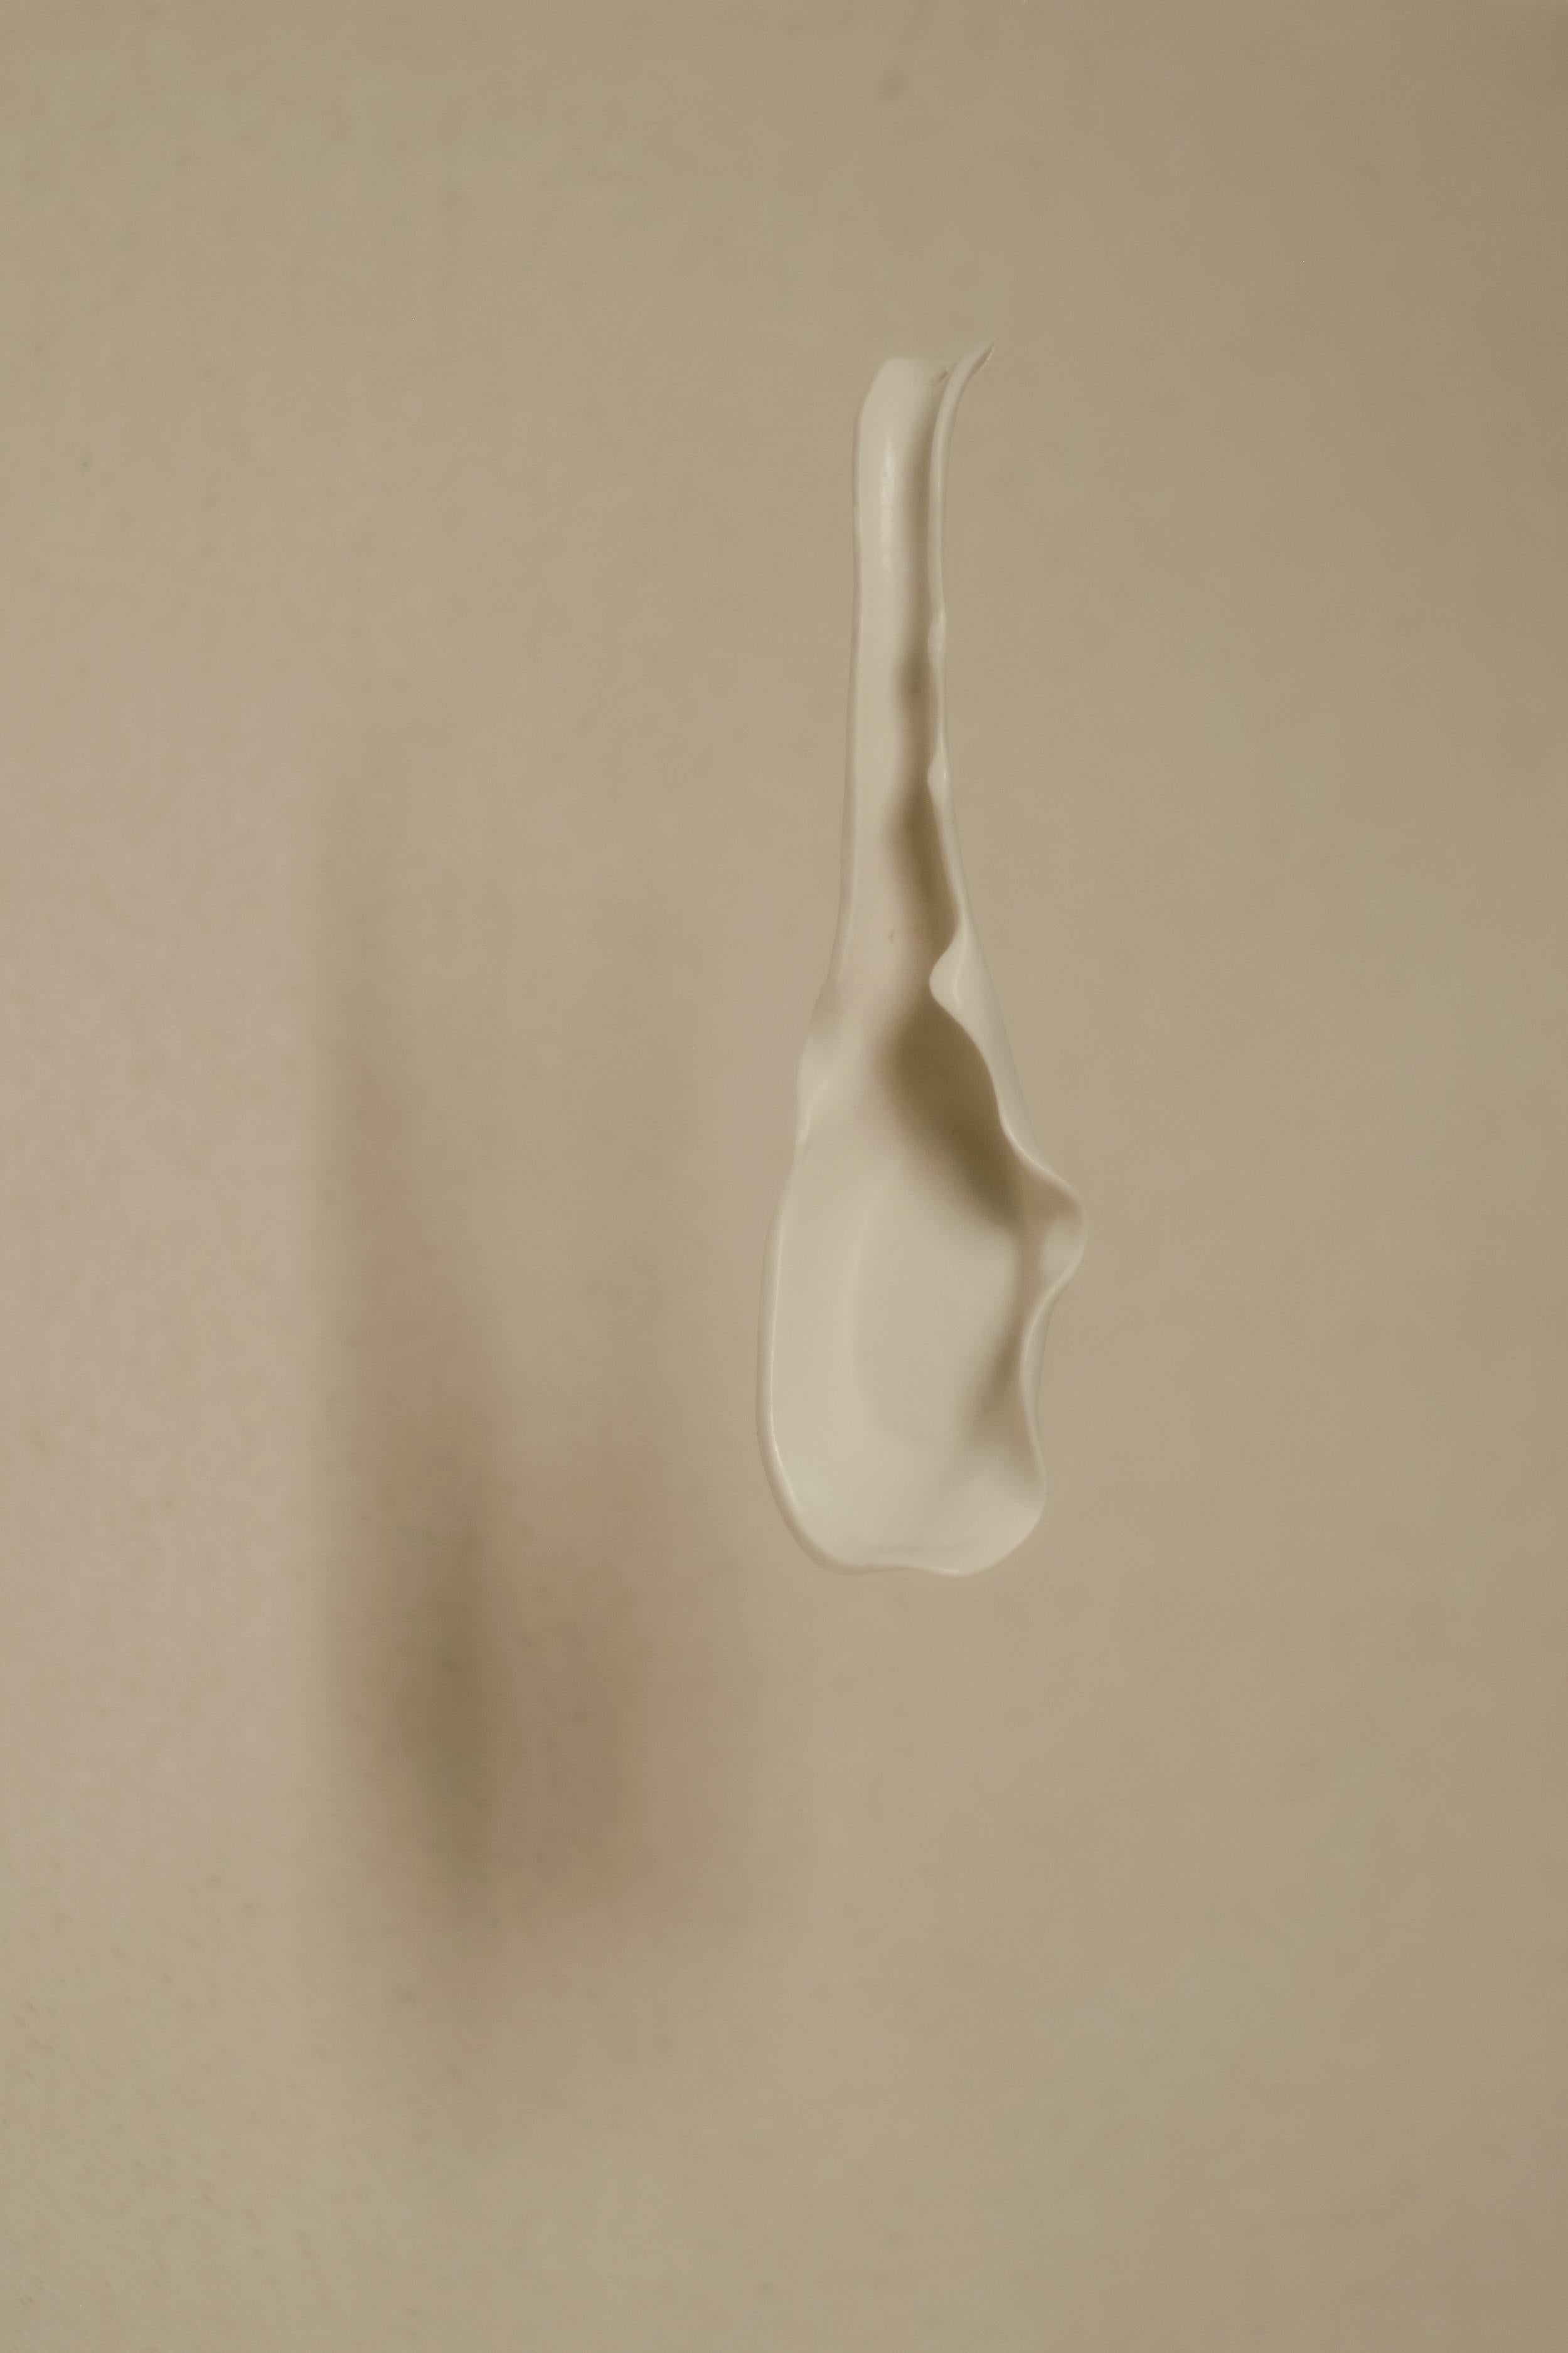 Skulpturaler Löffel von Liyang Zhang
Einzigartig.
Abmessungen: T 15 x B 4,5 x H 2,5 cm.
MATERIALIEN: Porzellan. 

Von Hand geformt und mit einem Messer verfeinert. Lebensmittel- und spülmaschinenfest. Alle Maße sind ungefähre Angaben. Bitte